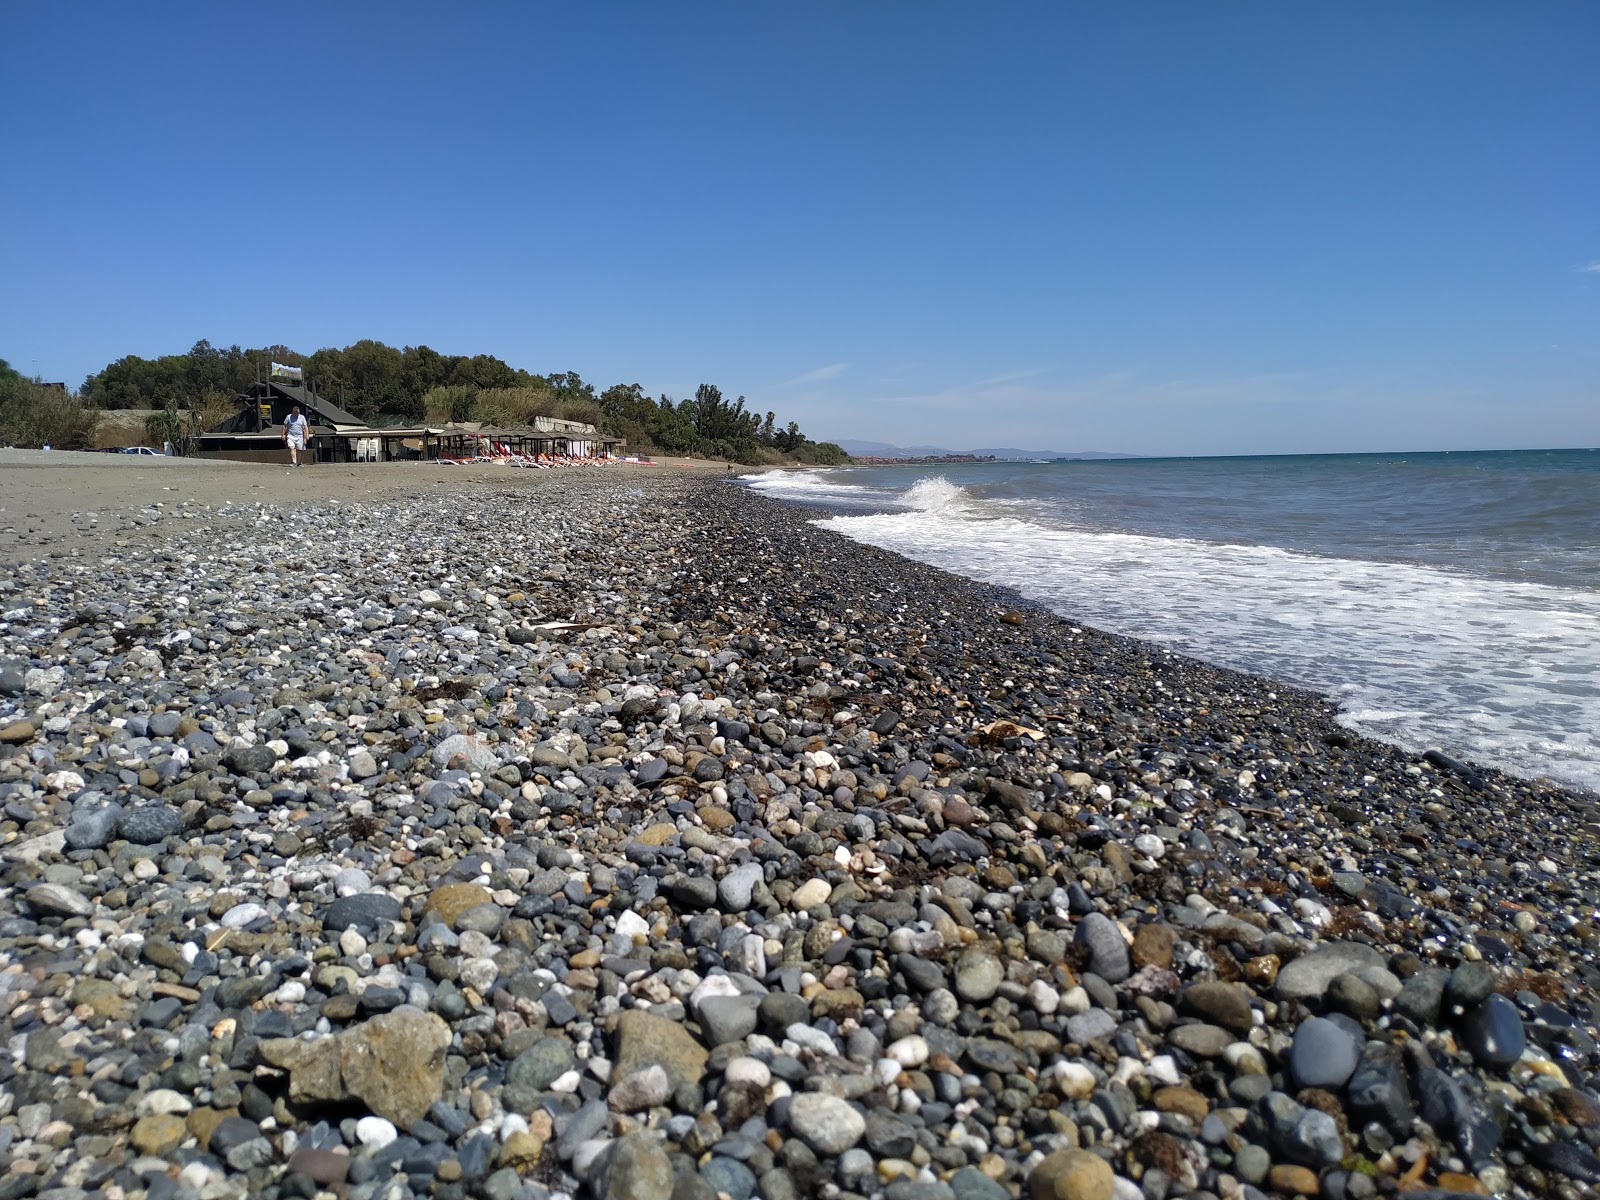 Playa del Padron'in fotoğrafı gri kum yüzey ile